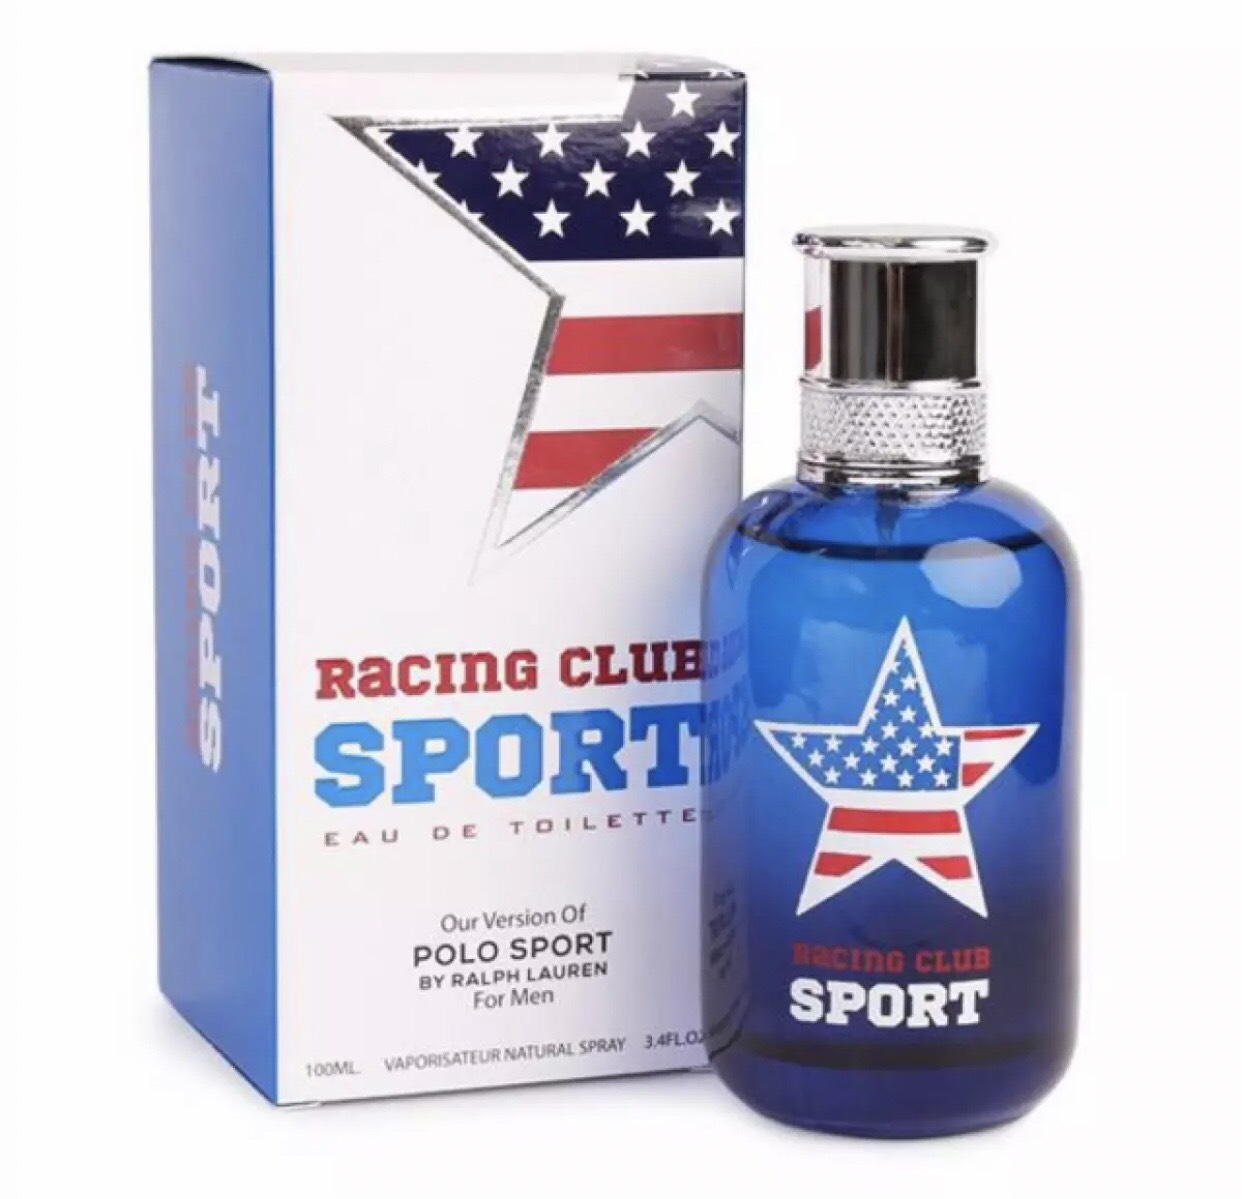 ( แท้ ) น้ำหอมอาหรับ RACING CLUB SPORT 100ml. น้ำหอมผู้ชาย สายสปอร์ตเท่ๆ กลิ่นหอมเทียบแบรนด์ POLO SPORT กลิ่นหอมสดชื่นมาก แนวชอบเล่นกีฬา ดูทันสมัย